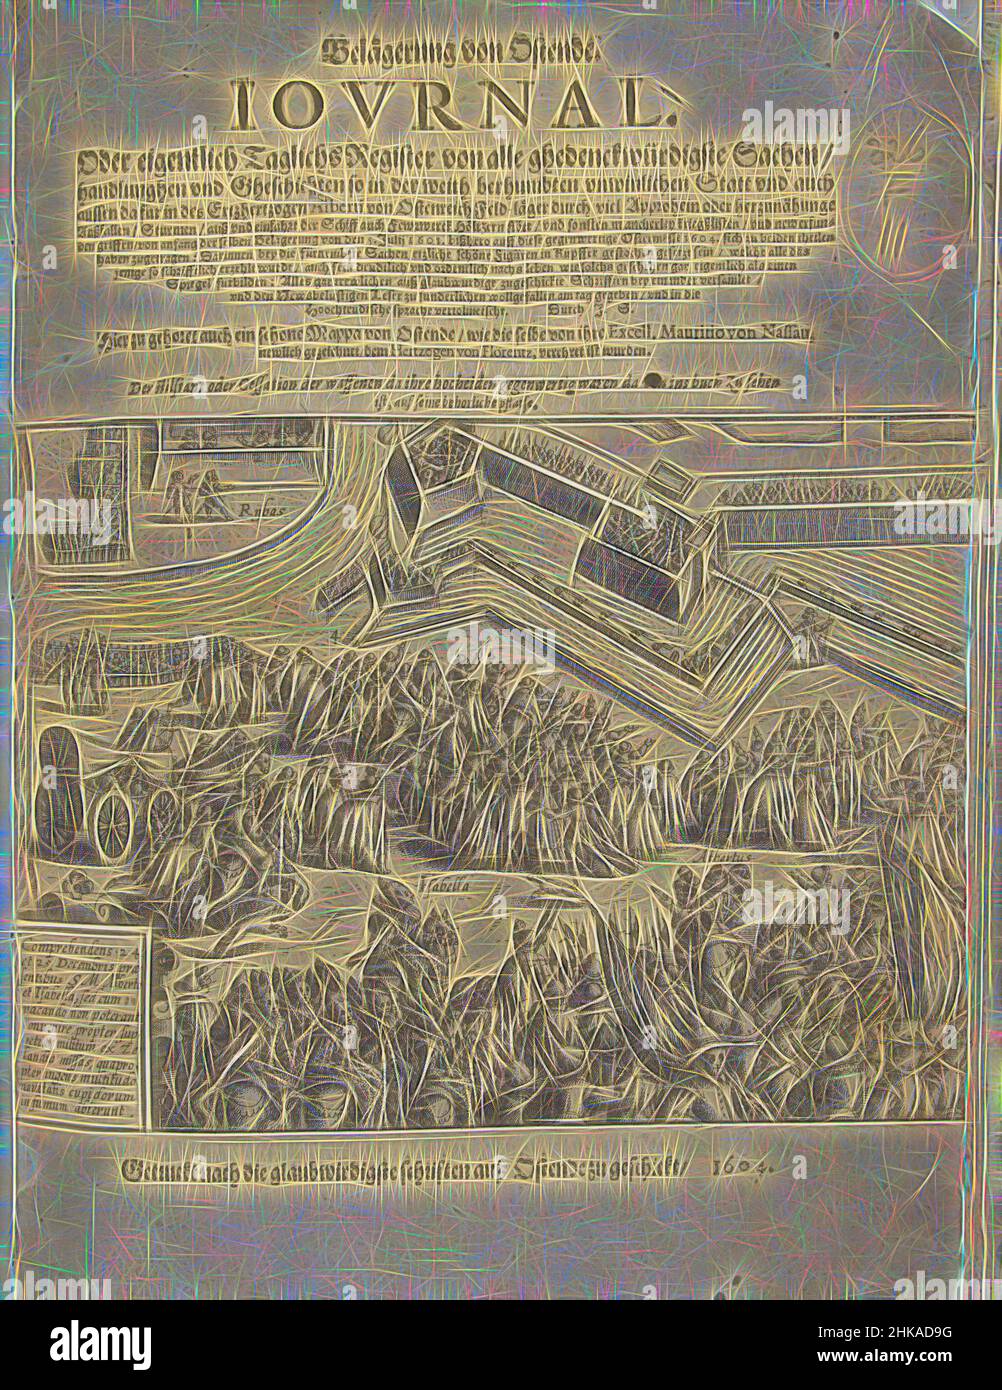 Inspiré par Siege of Ostende : imprimé du titre montrant la trêve du 24 au 25 décembre 1601, imprimé du titre montrant la trêve du 24 au 25 décembre 1601. Isabella et Albrecht se montrent parmi une grande foule en face de la ville assiégée. En bas à gauche une cartouche avec une inscription en latin. Au-dessus de l'imprimé, repensé par Artotop. L'art classique réinventé avec une touche moderne. Conception de lumière chaleureuse et gaie, de luminosité et de rayonnement de lumière. La photographie s'inspire du surréalisme et du futurisme, embrassant l'énergie dynamique de la technologie moderne, du mouvement, de la vitesse et révolutionne la culture Banque D'Images